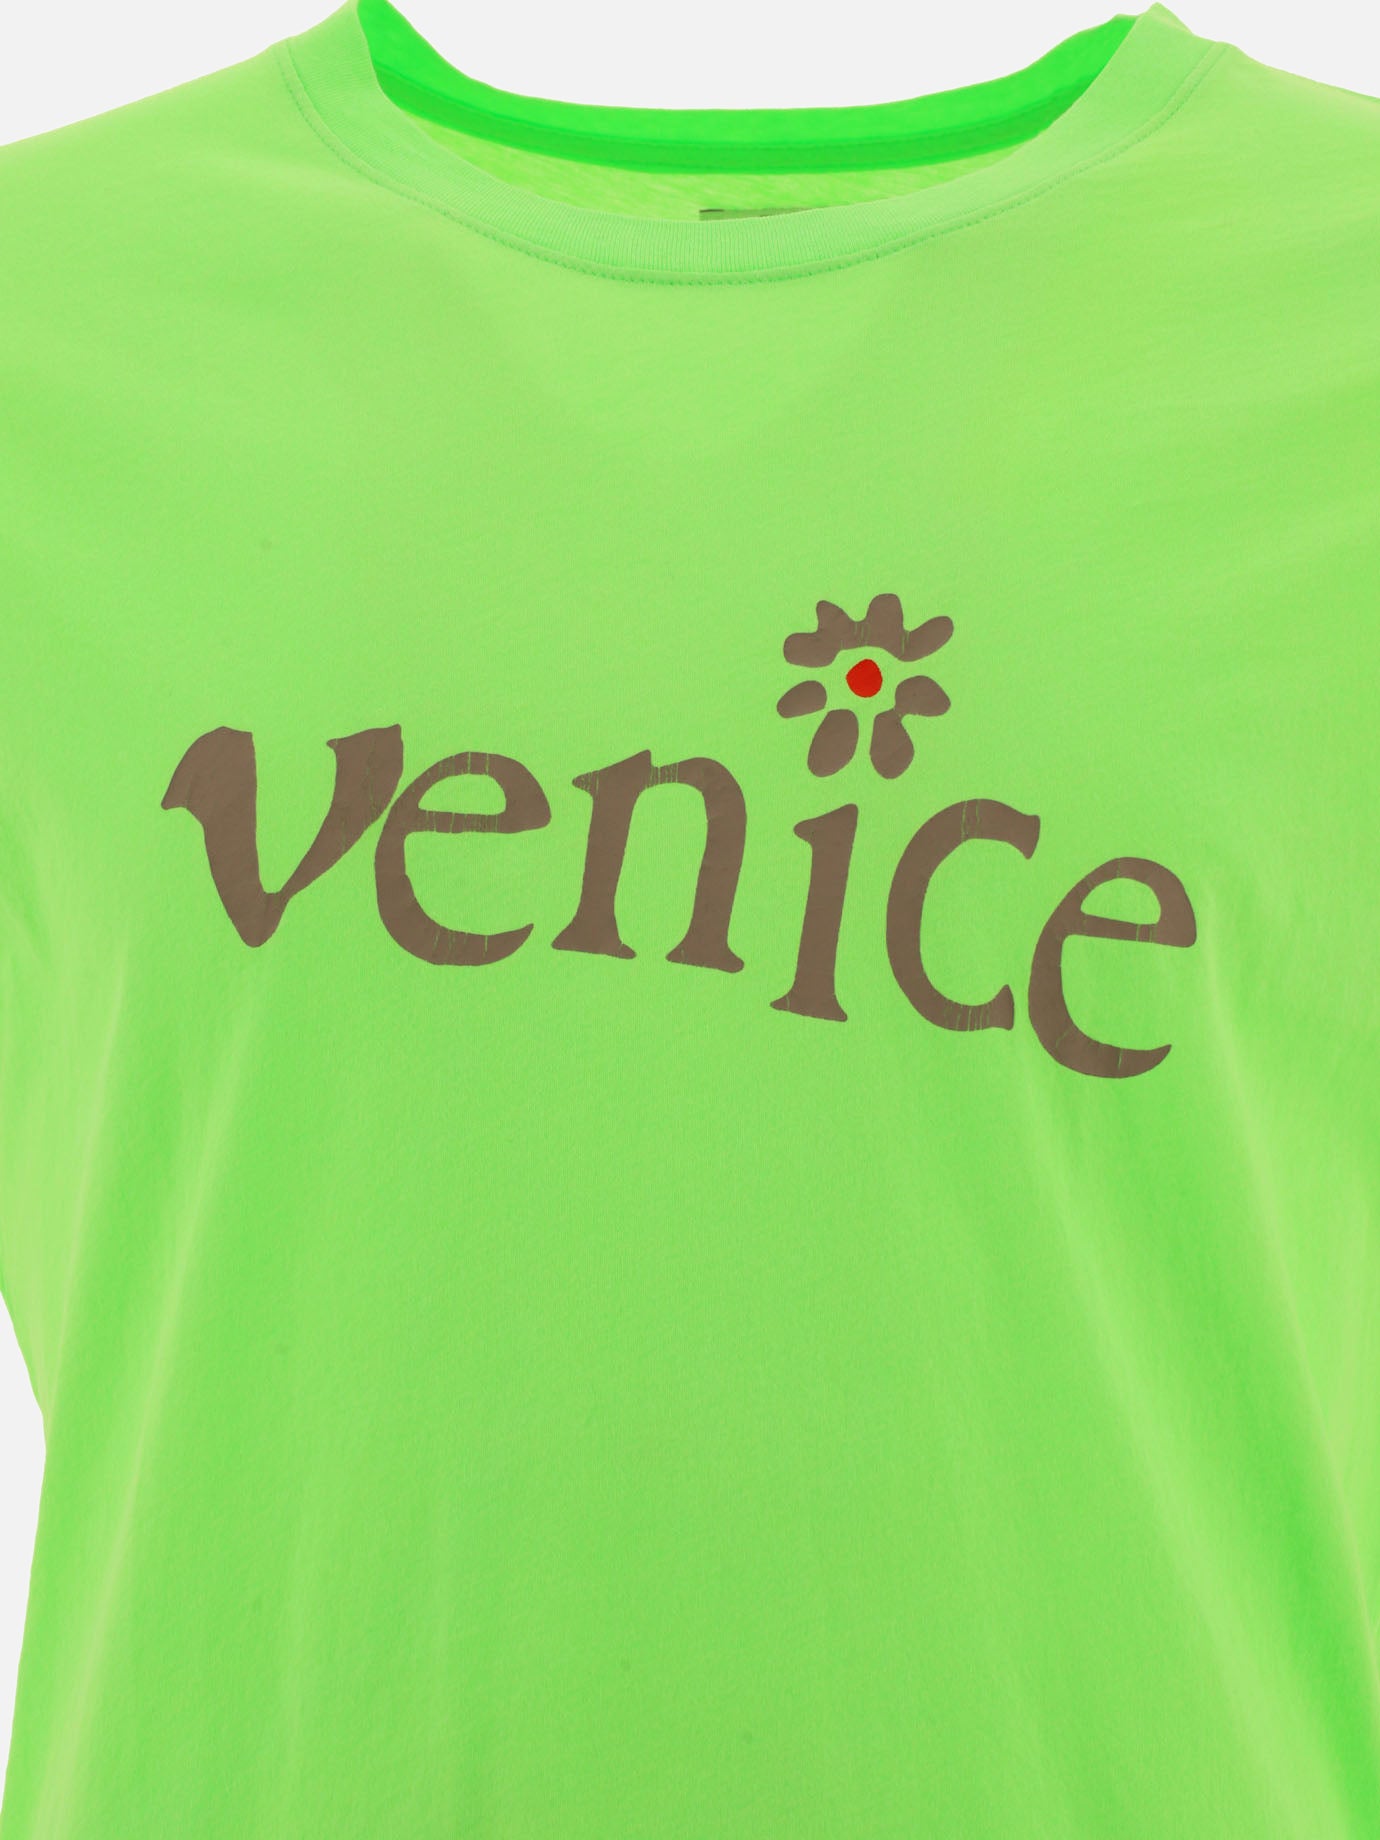 T-shirt "Venice"